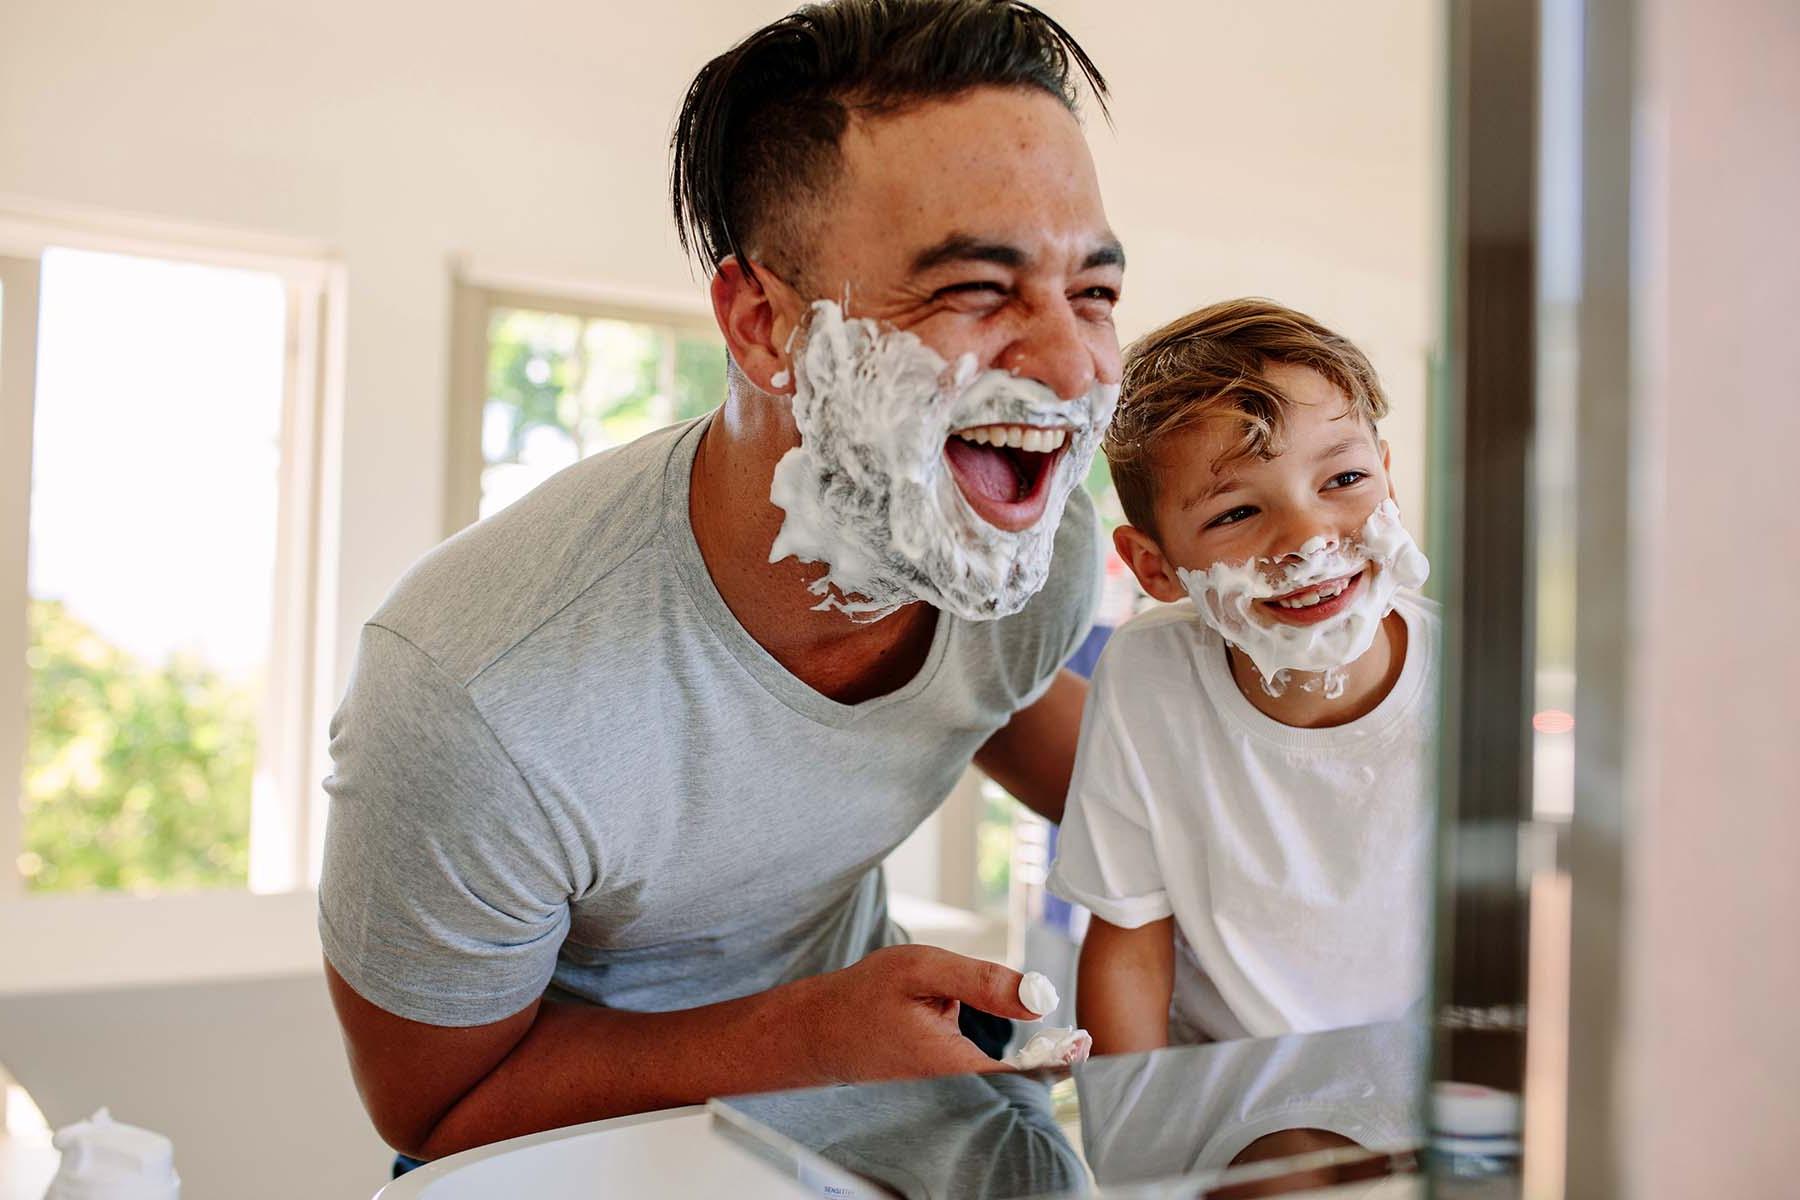 脸上涂着剃须膏的男人和男孩在浴室里大笑.